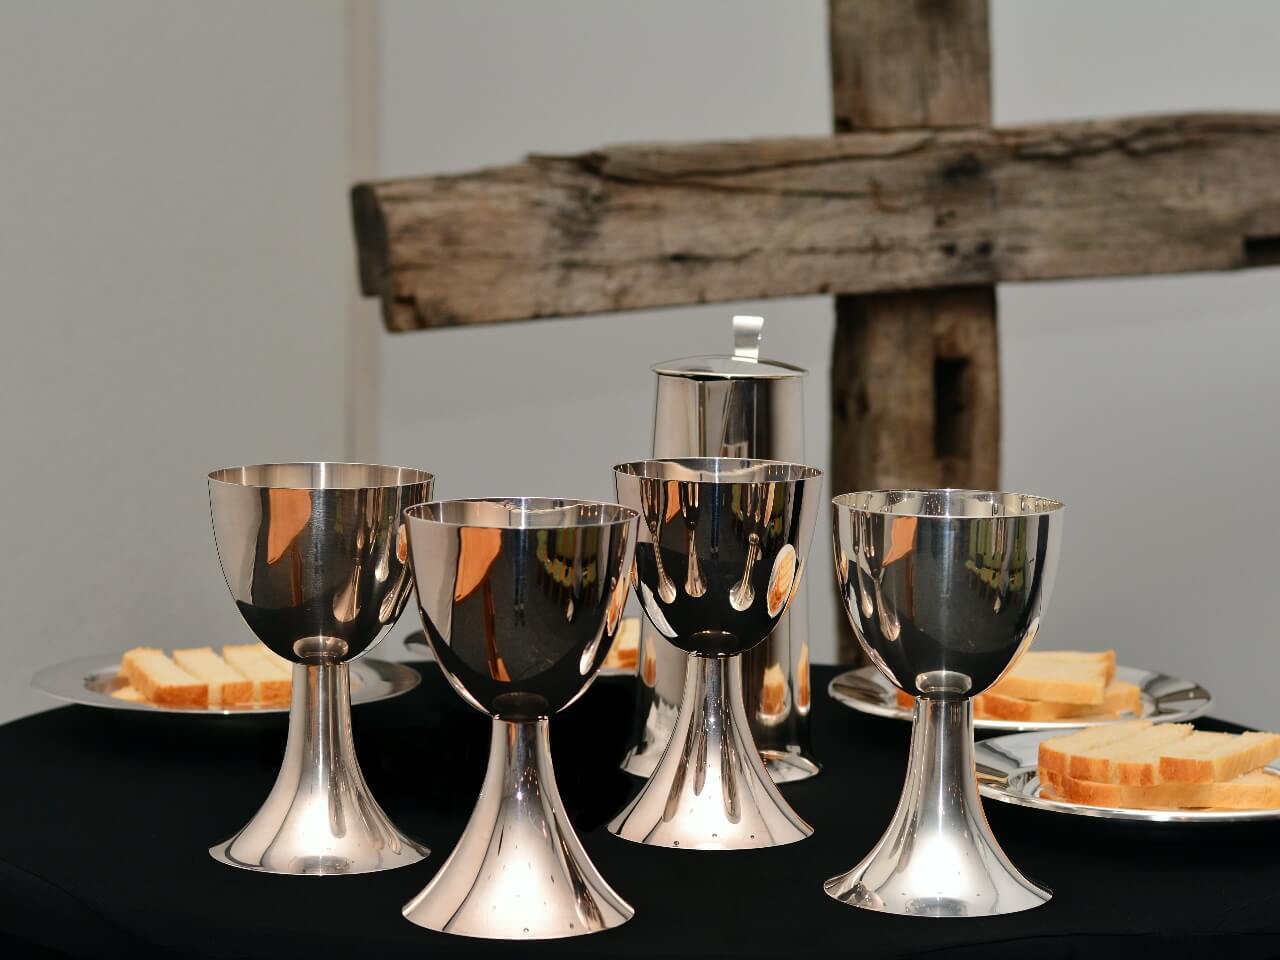 eucharistic cups